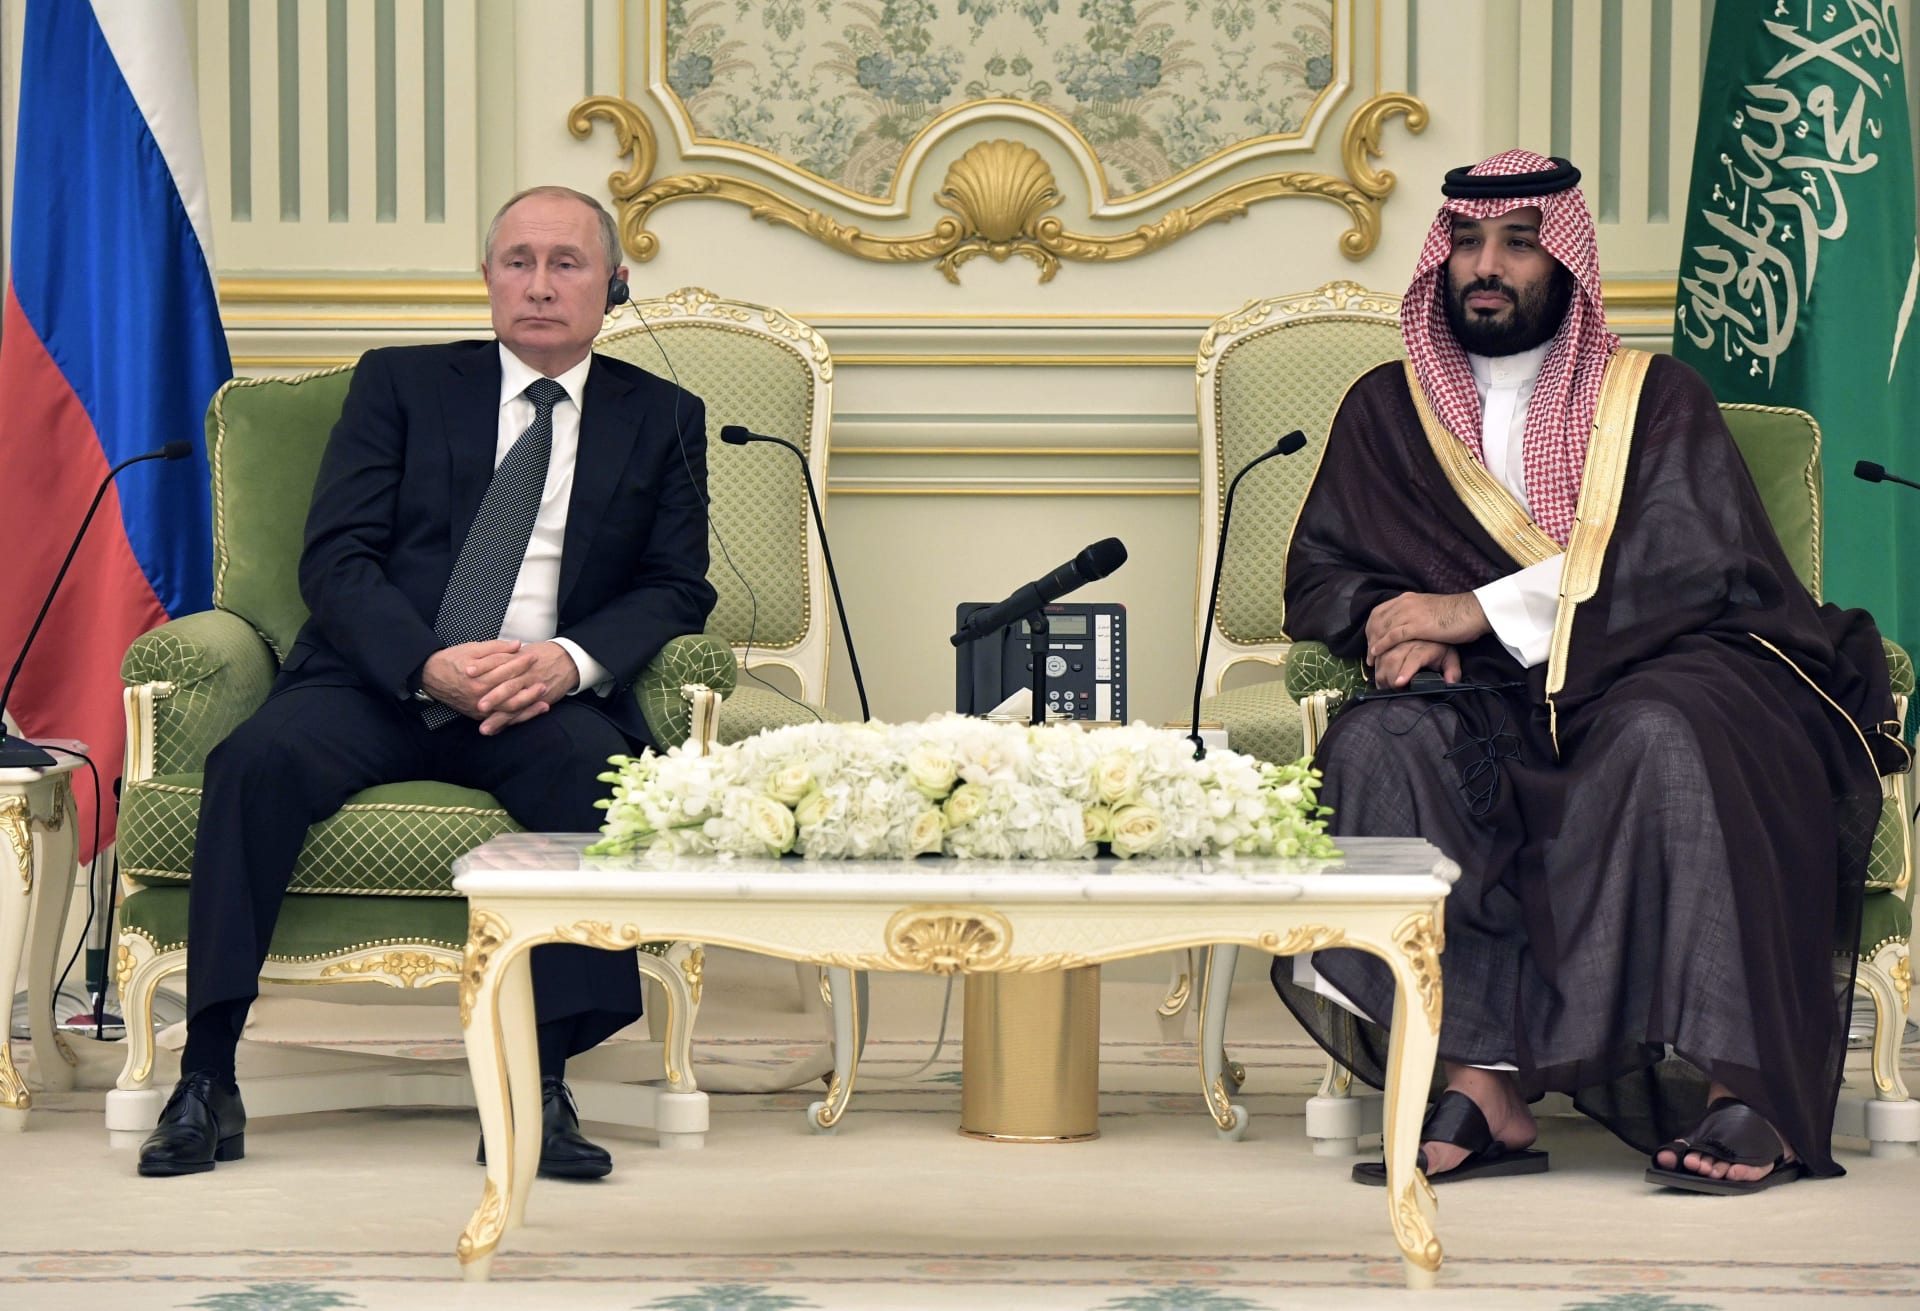 بوتين يتصل بمحمد بن سلمان لـ"بحث العلاقات الثنائية والقضايا الدولية"